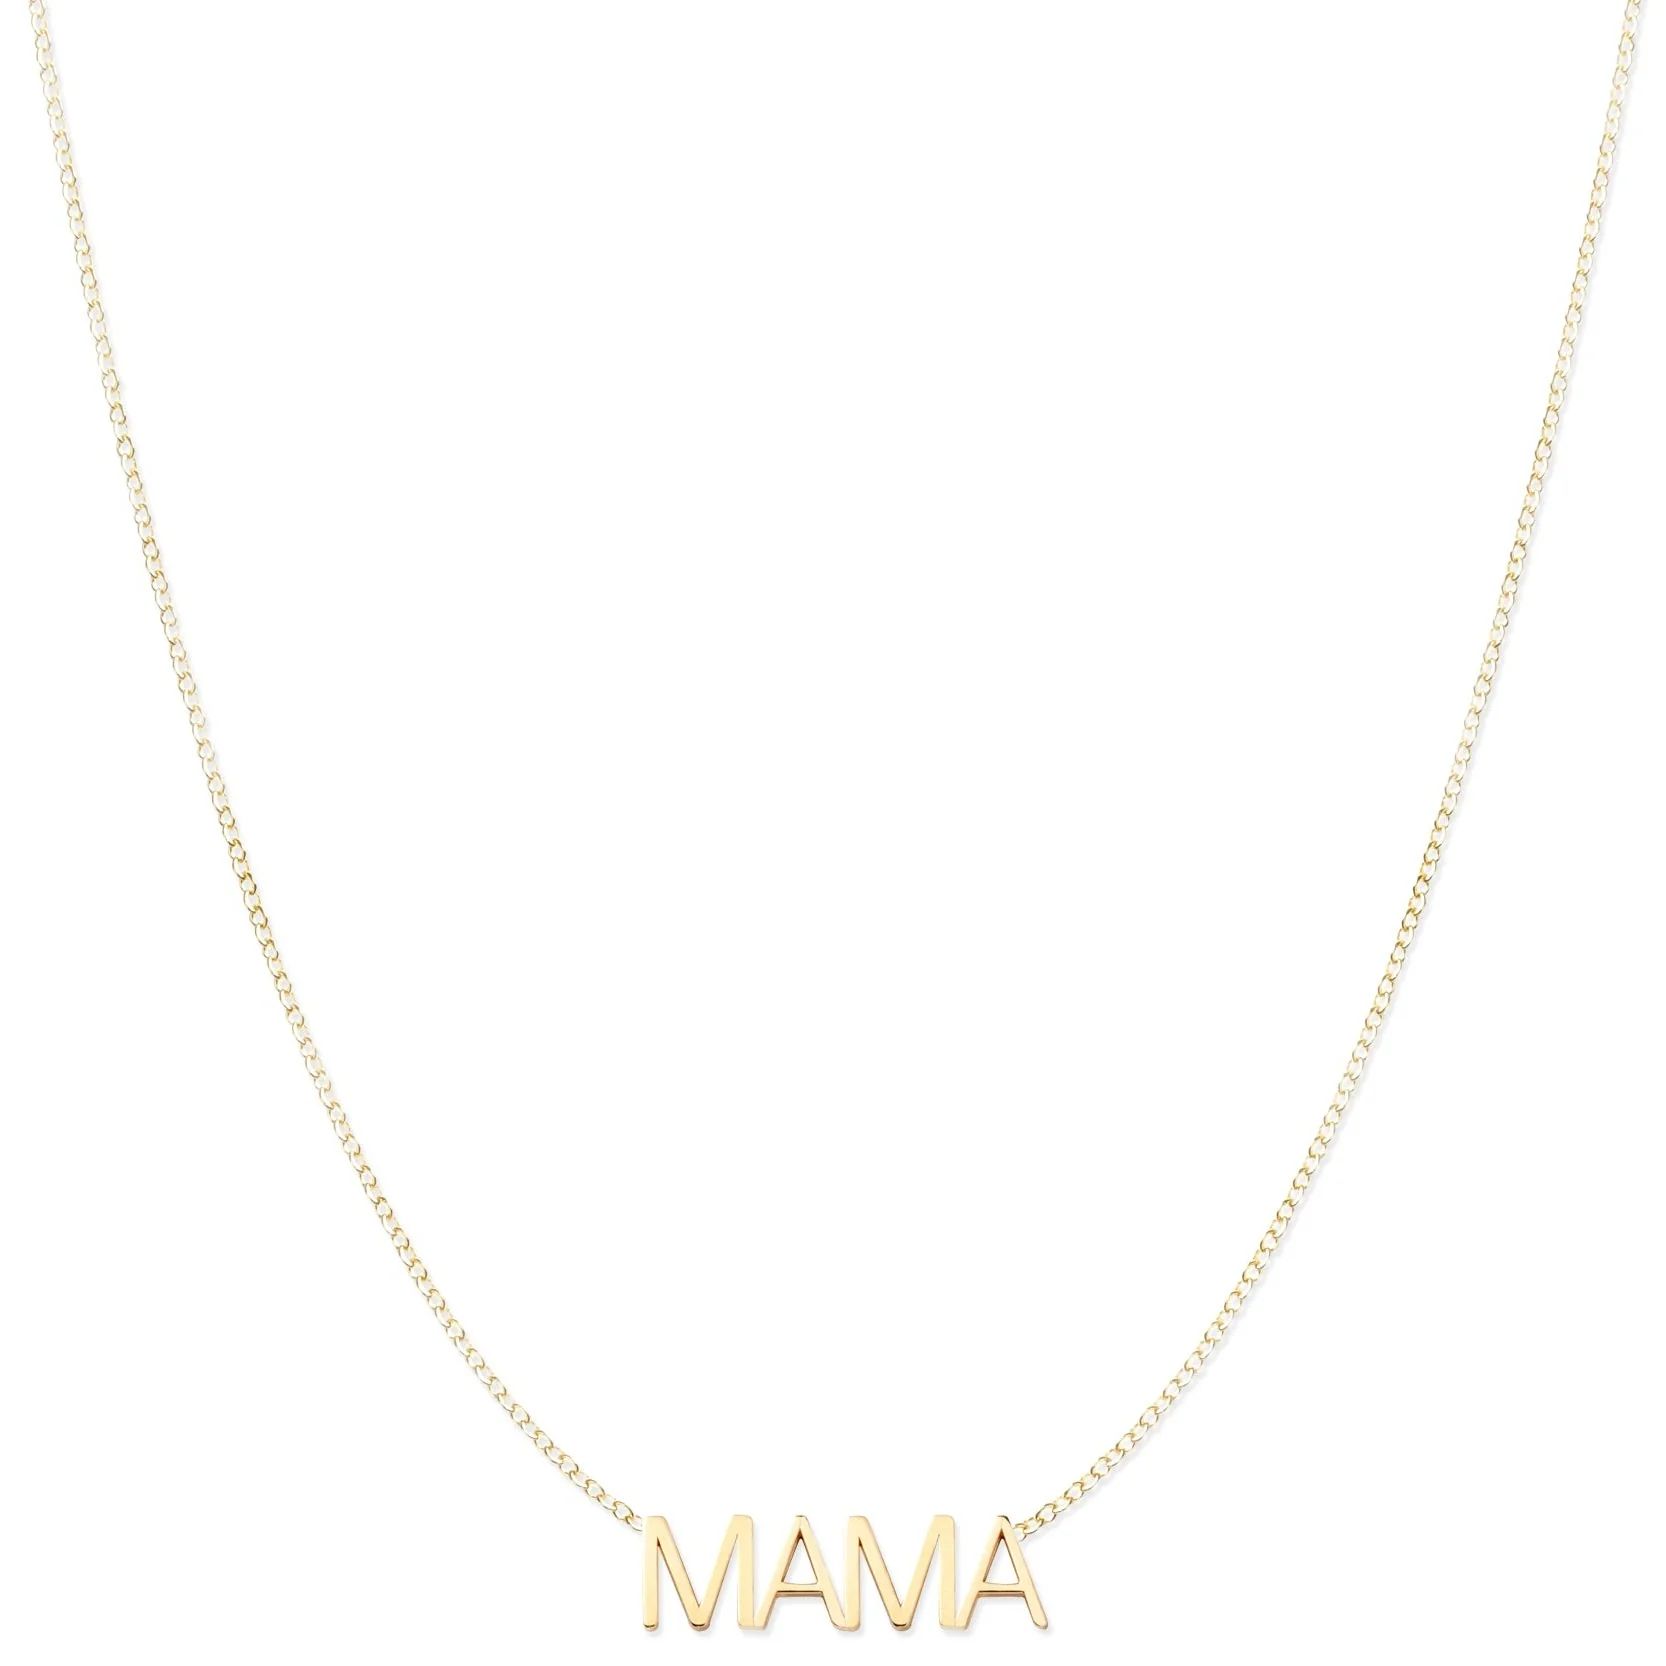 MAMA Necklace | Maya Brenner